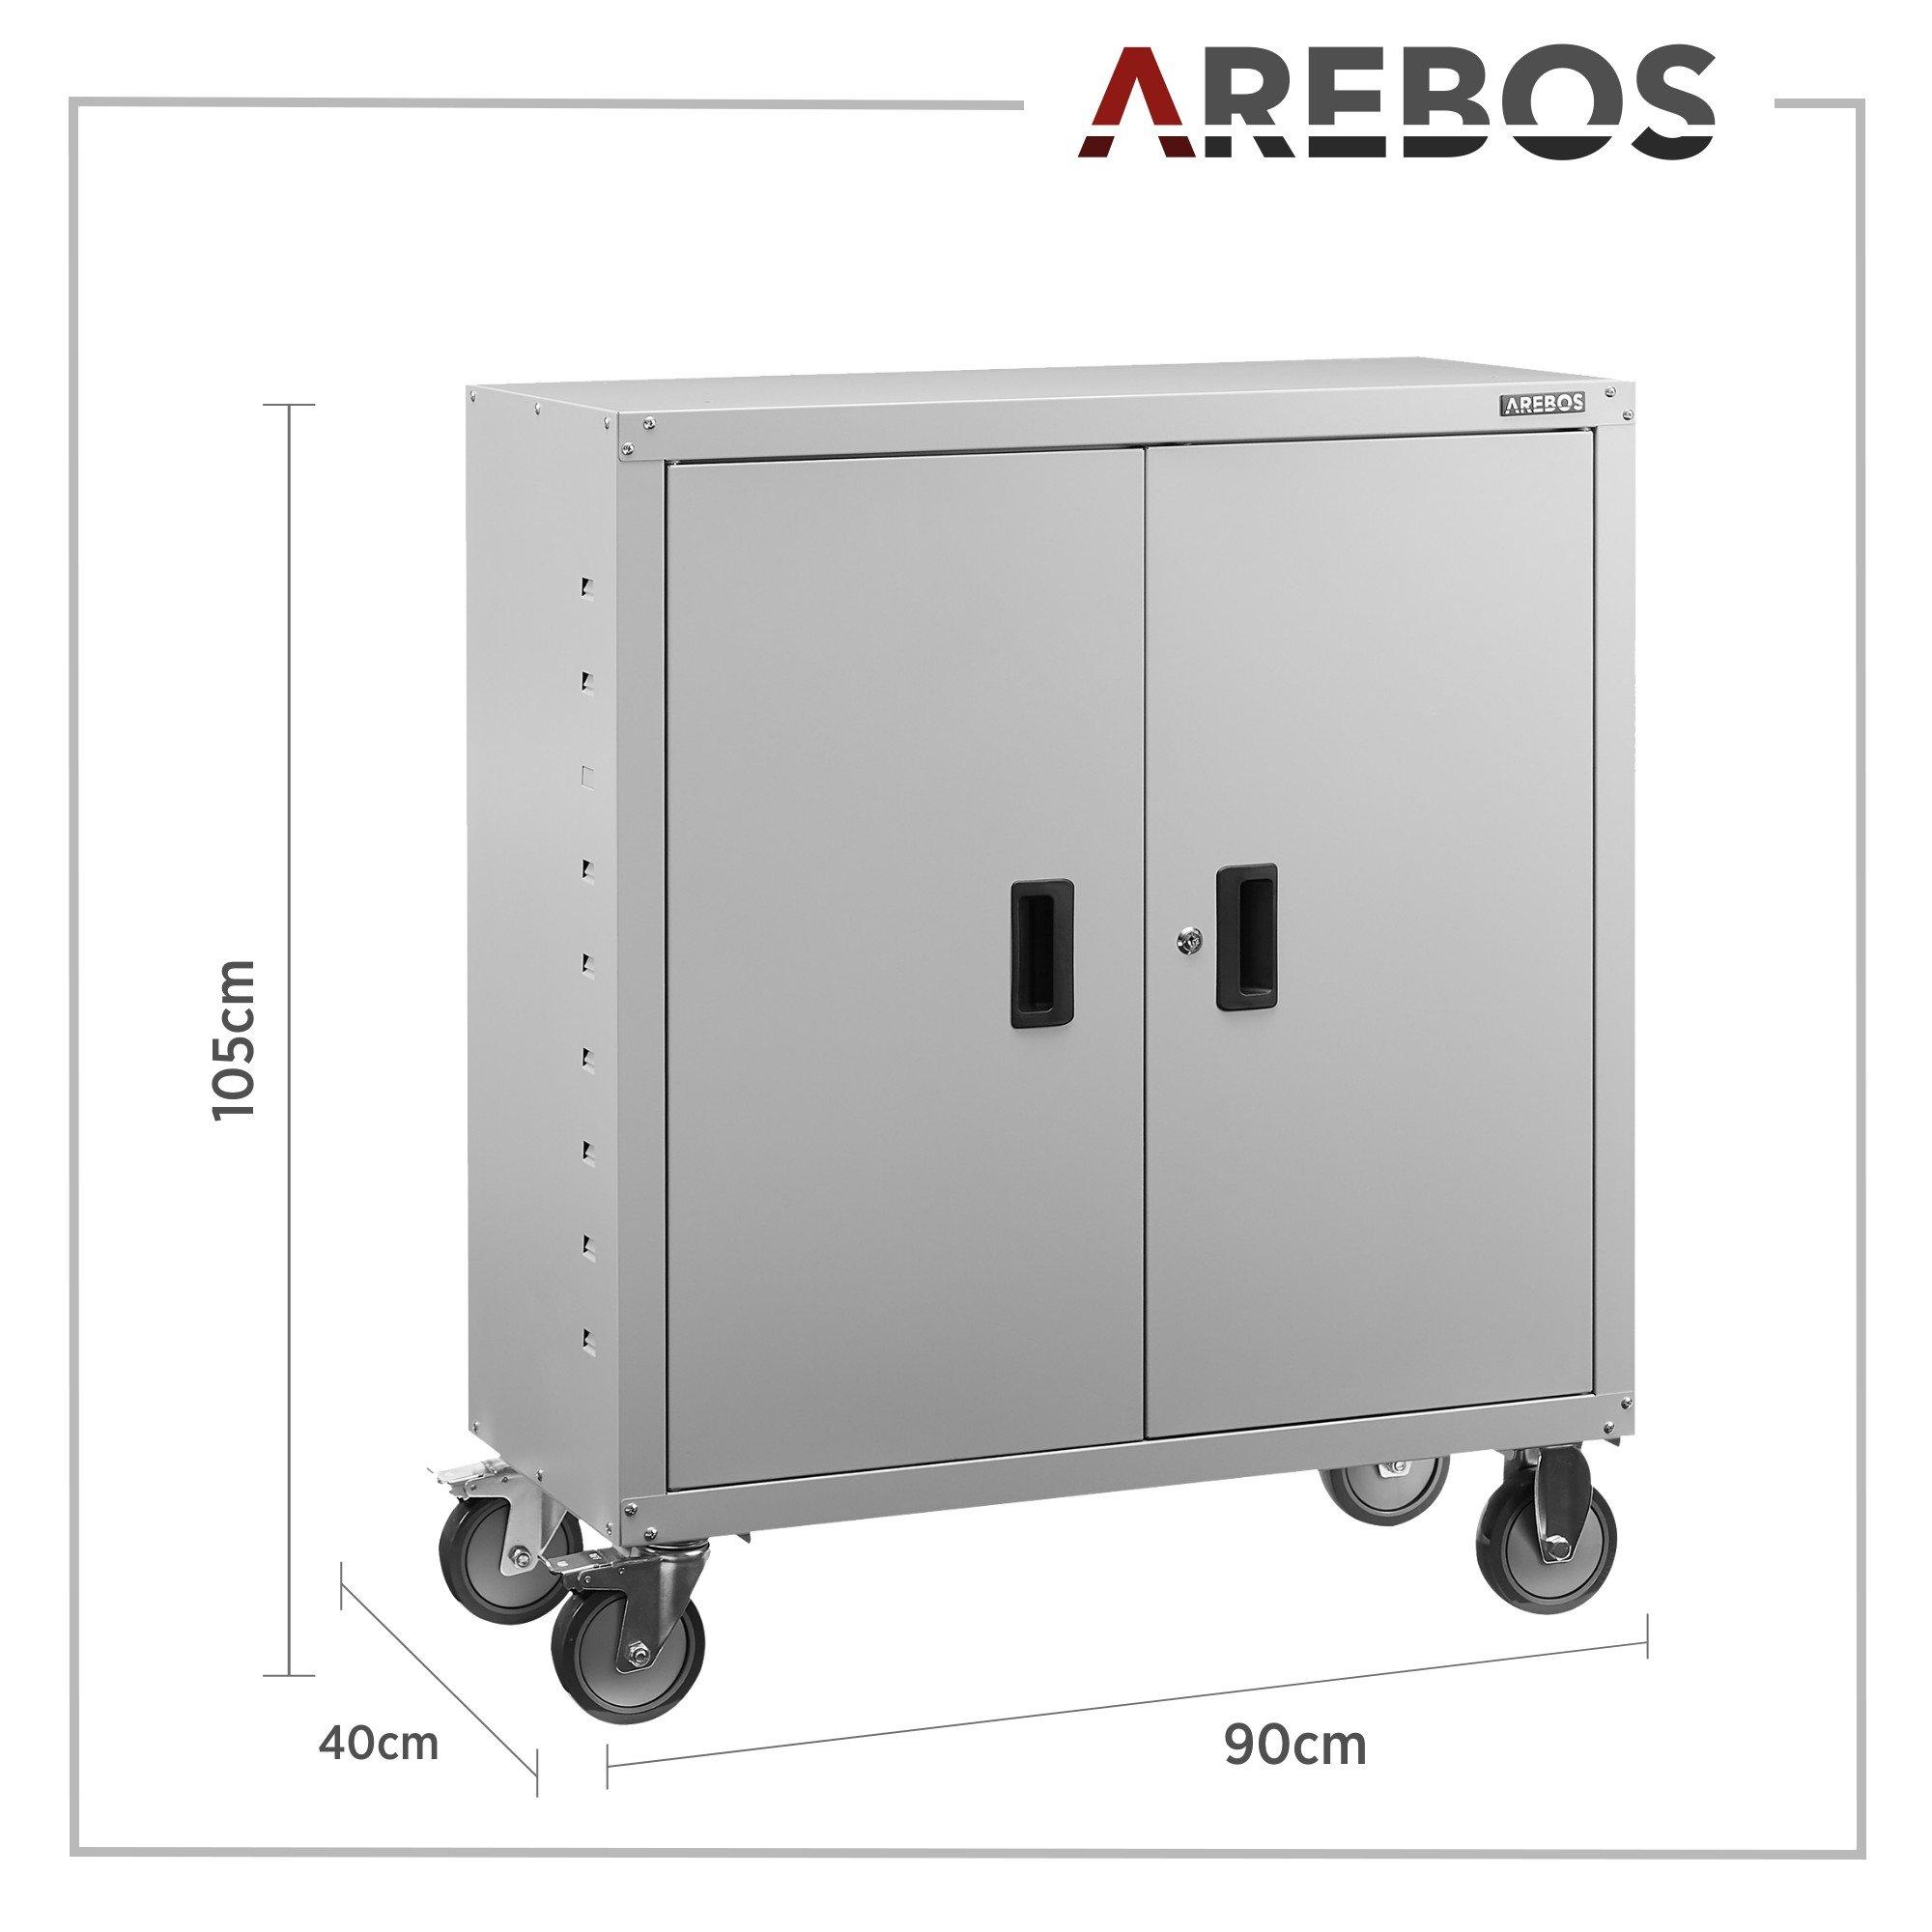 Arebos Aktenschrank Büroschrank Lagerschrank Materialschrank mit Räder  